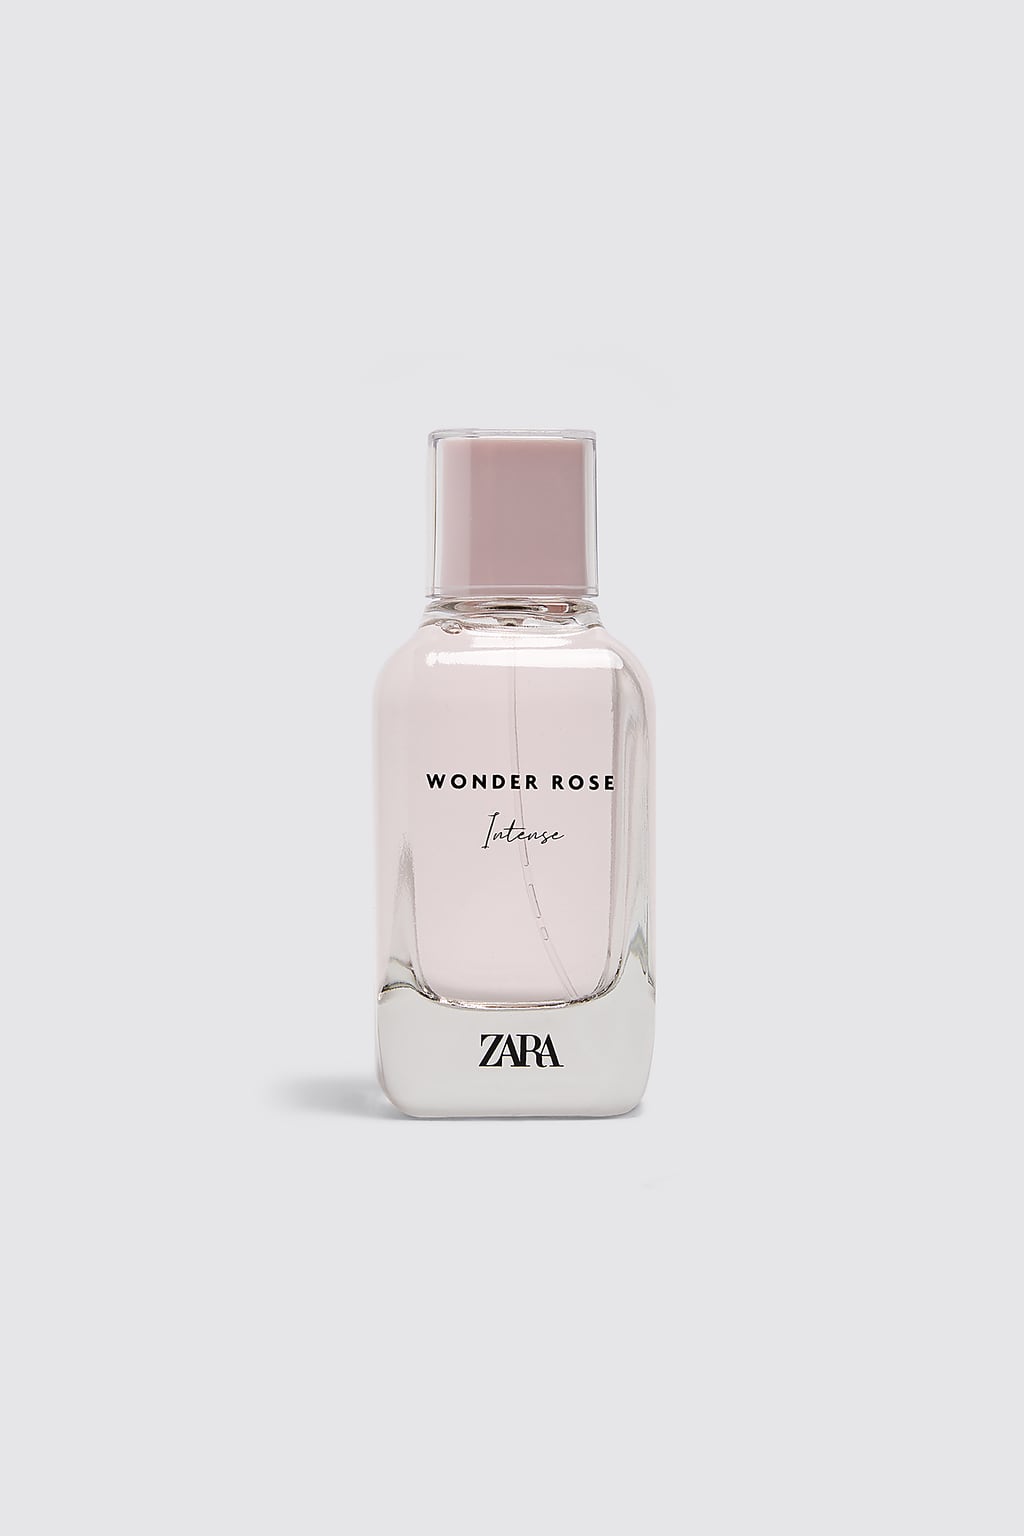 Wonder Rose Intense Zara perfume - a 